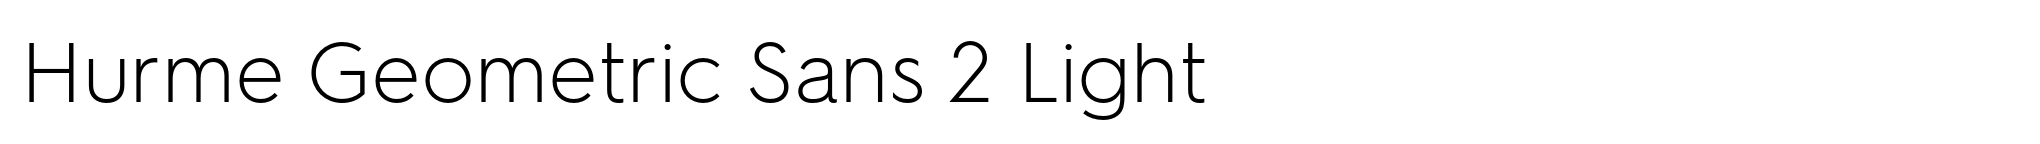 Hurme Geometric Sans 2 Light image